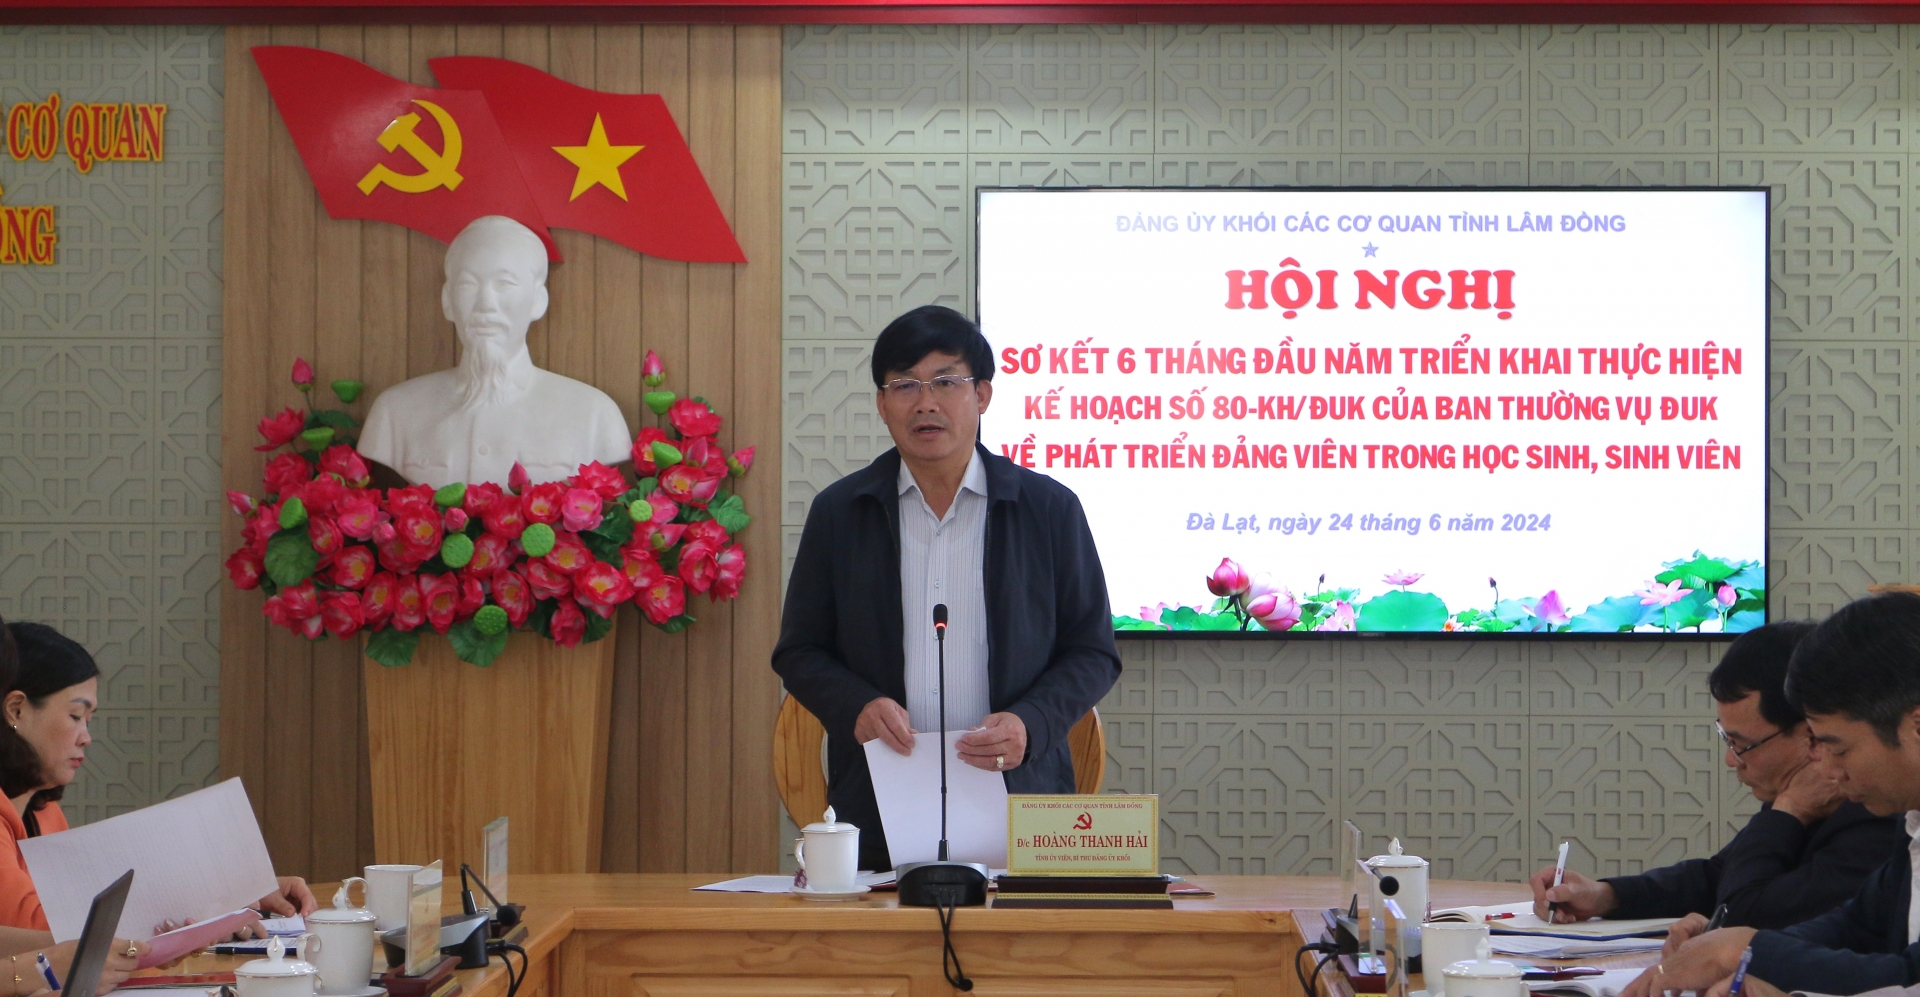 Đồng chí Hoàng Thanh Hải – Bí thư Đảng ủy Khối Các cơ quan tỉnh phát biểu kết luận Hội nghị